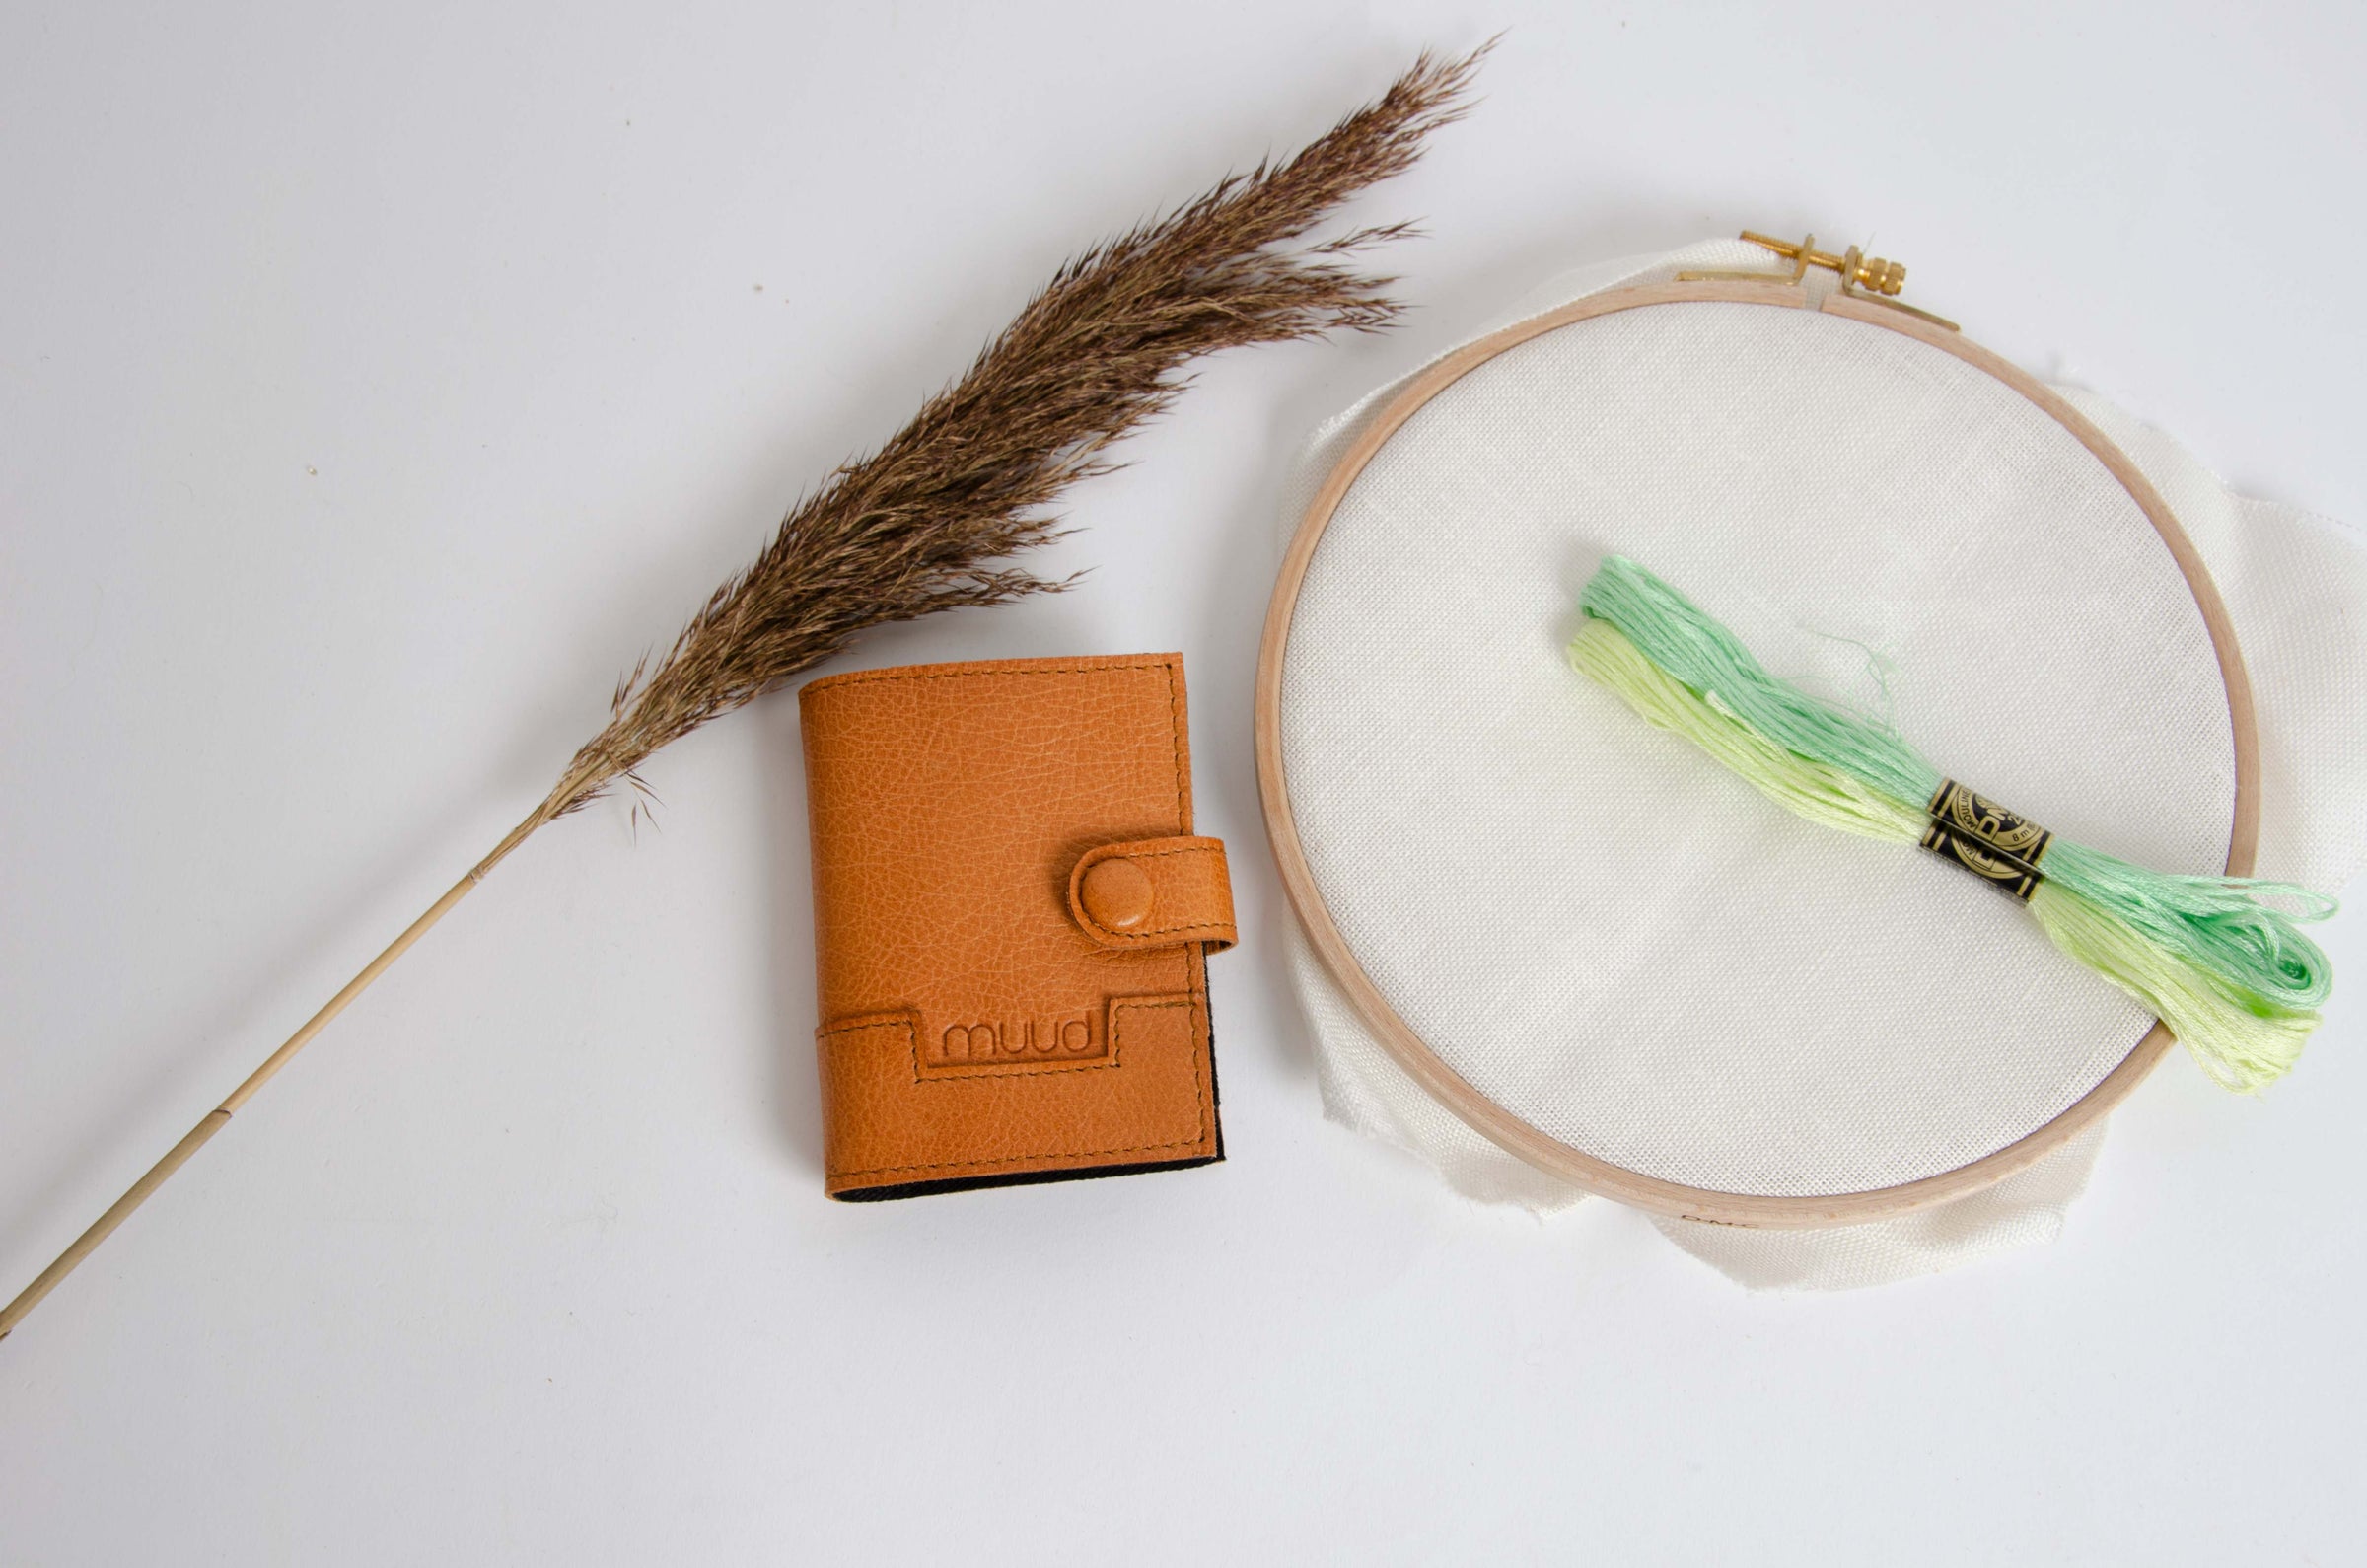 Leather pouch for storing needles for embroidery, knitting, crochet or sewing. Læder pung/bog til opbevaring af nåle til broderi, strikning, hækling eller syning